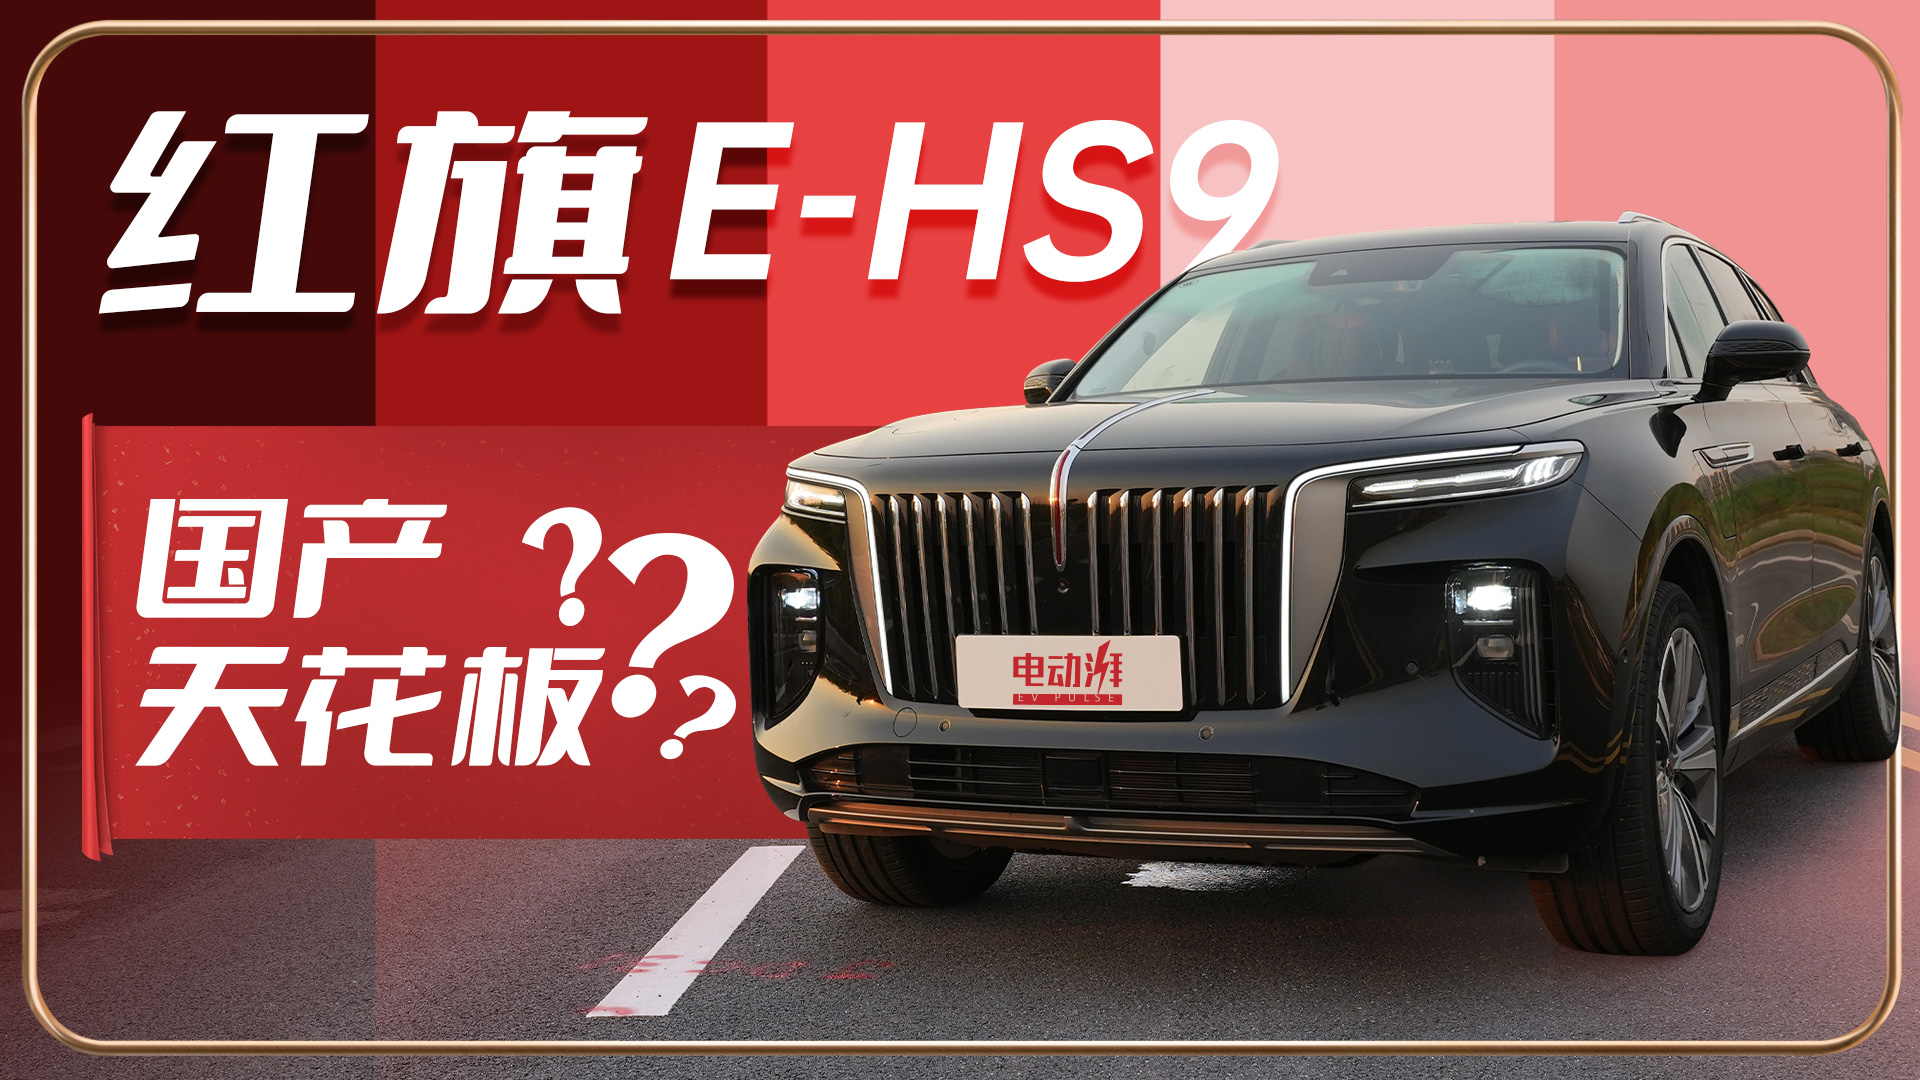 【音速车评】试驾红旗E-HS9，它真的值这么贵的价格吗？视频